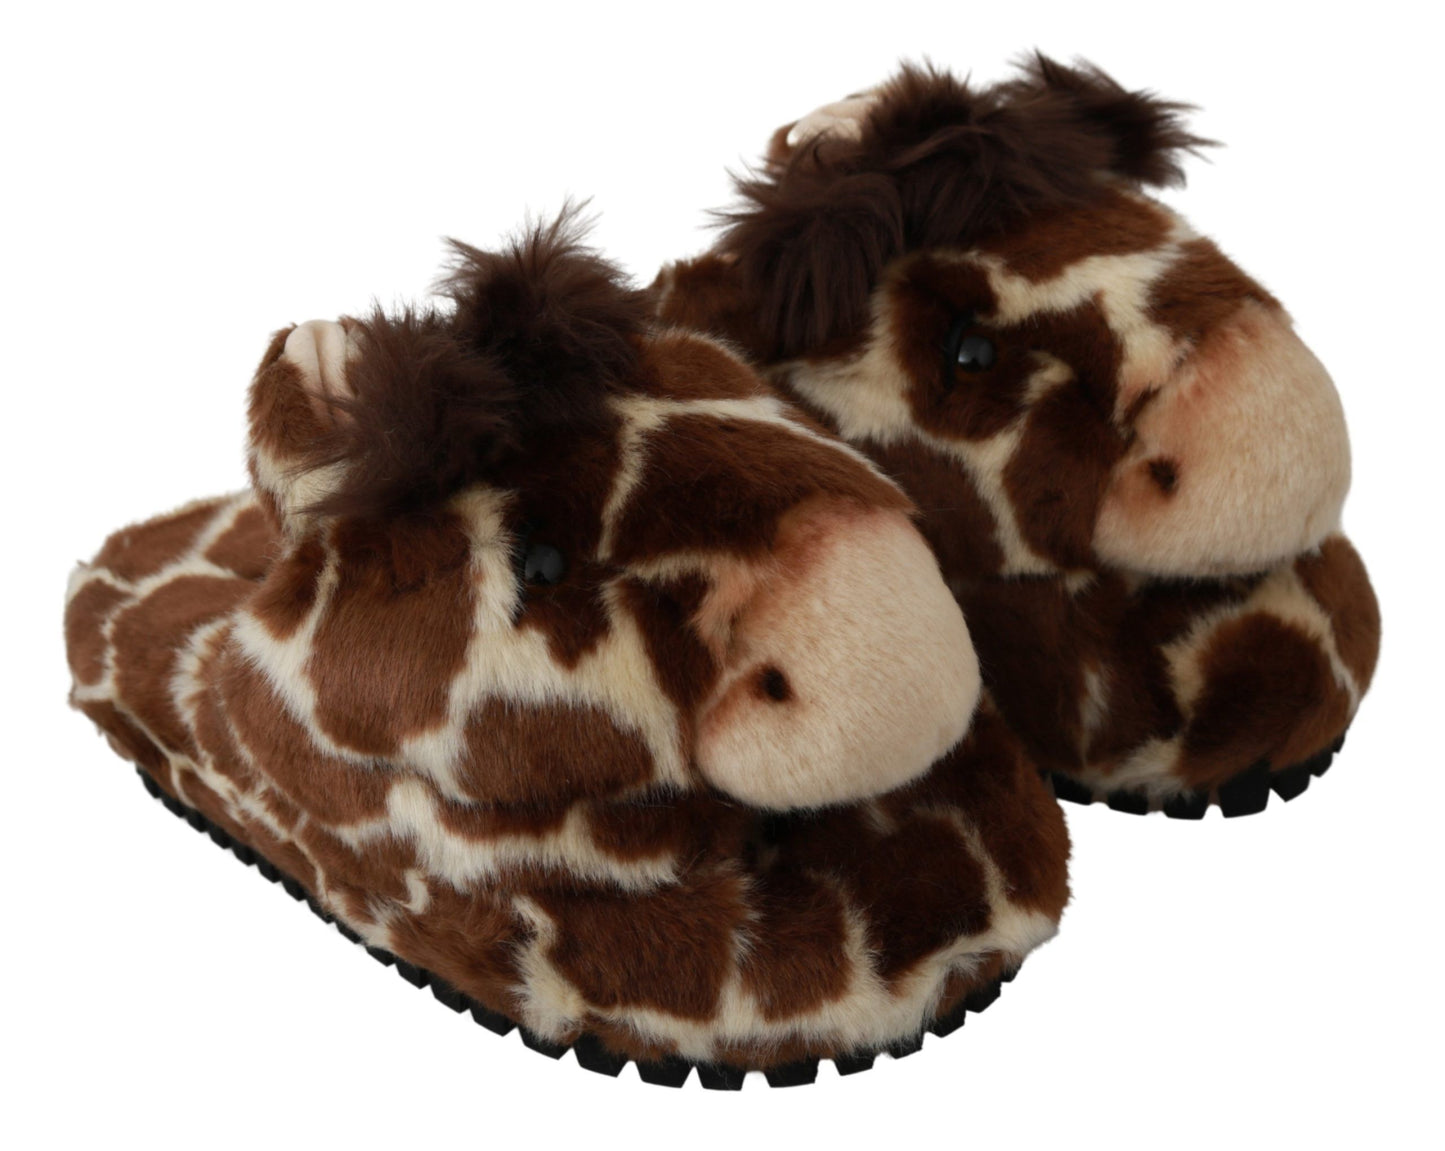 Dolce & Gabbana Brown Giraffe Slippers Flats Sandals Shoes